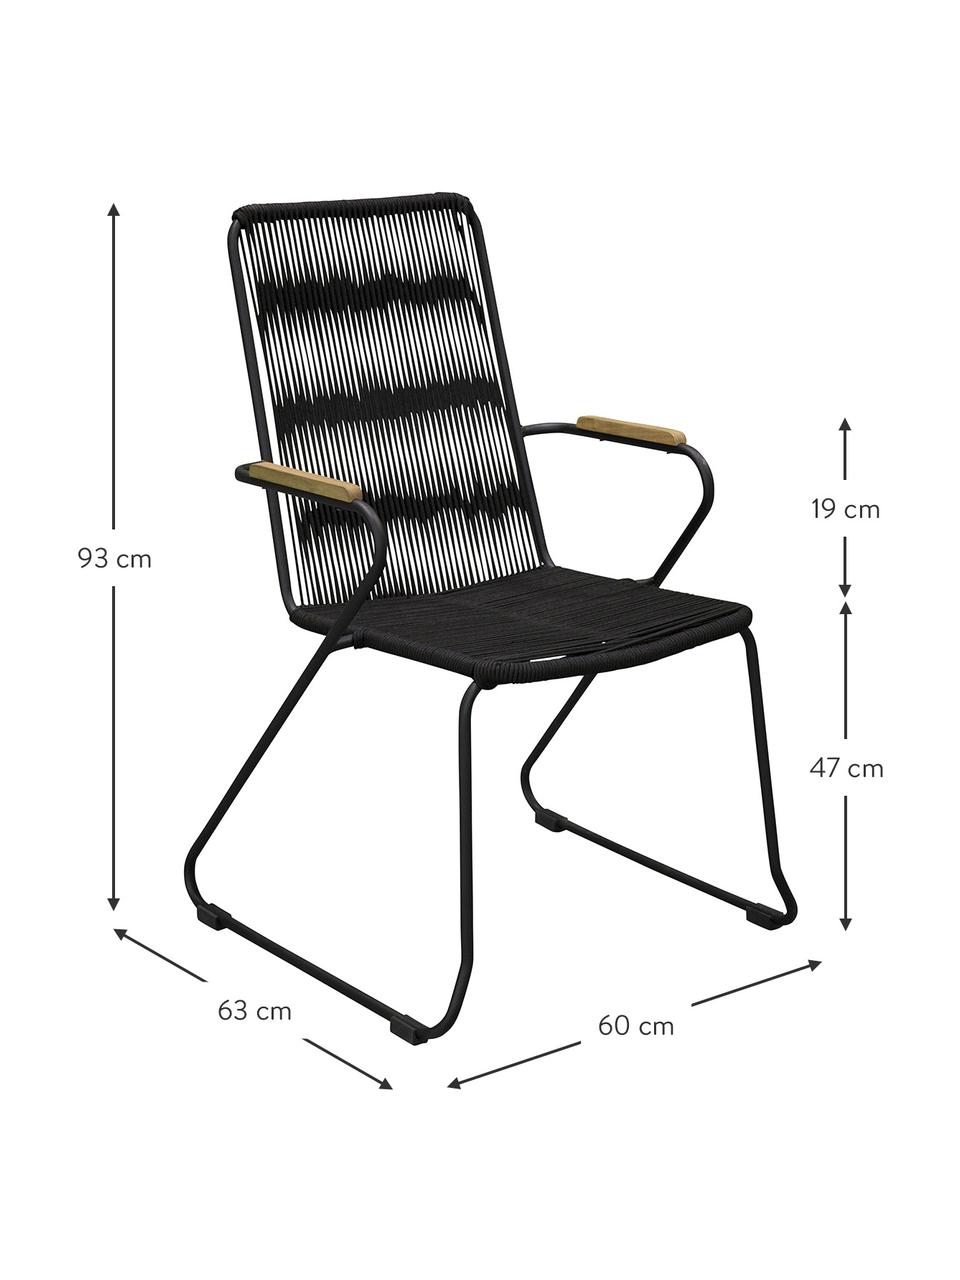 Garten-Armlehnstühle Bois, 2 Stück, Sitzfläche: Seil, beschichtet, Gestell: Metall, lackiert, Armlehnen: Teakholz, Schwarz, Teakholz, B 60 x T 63 cm